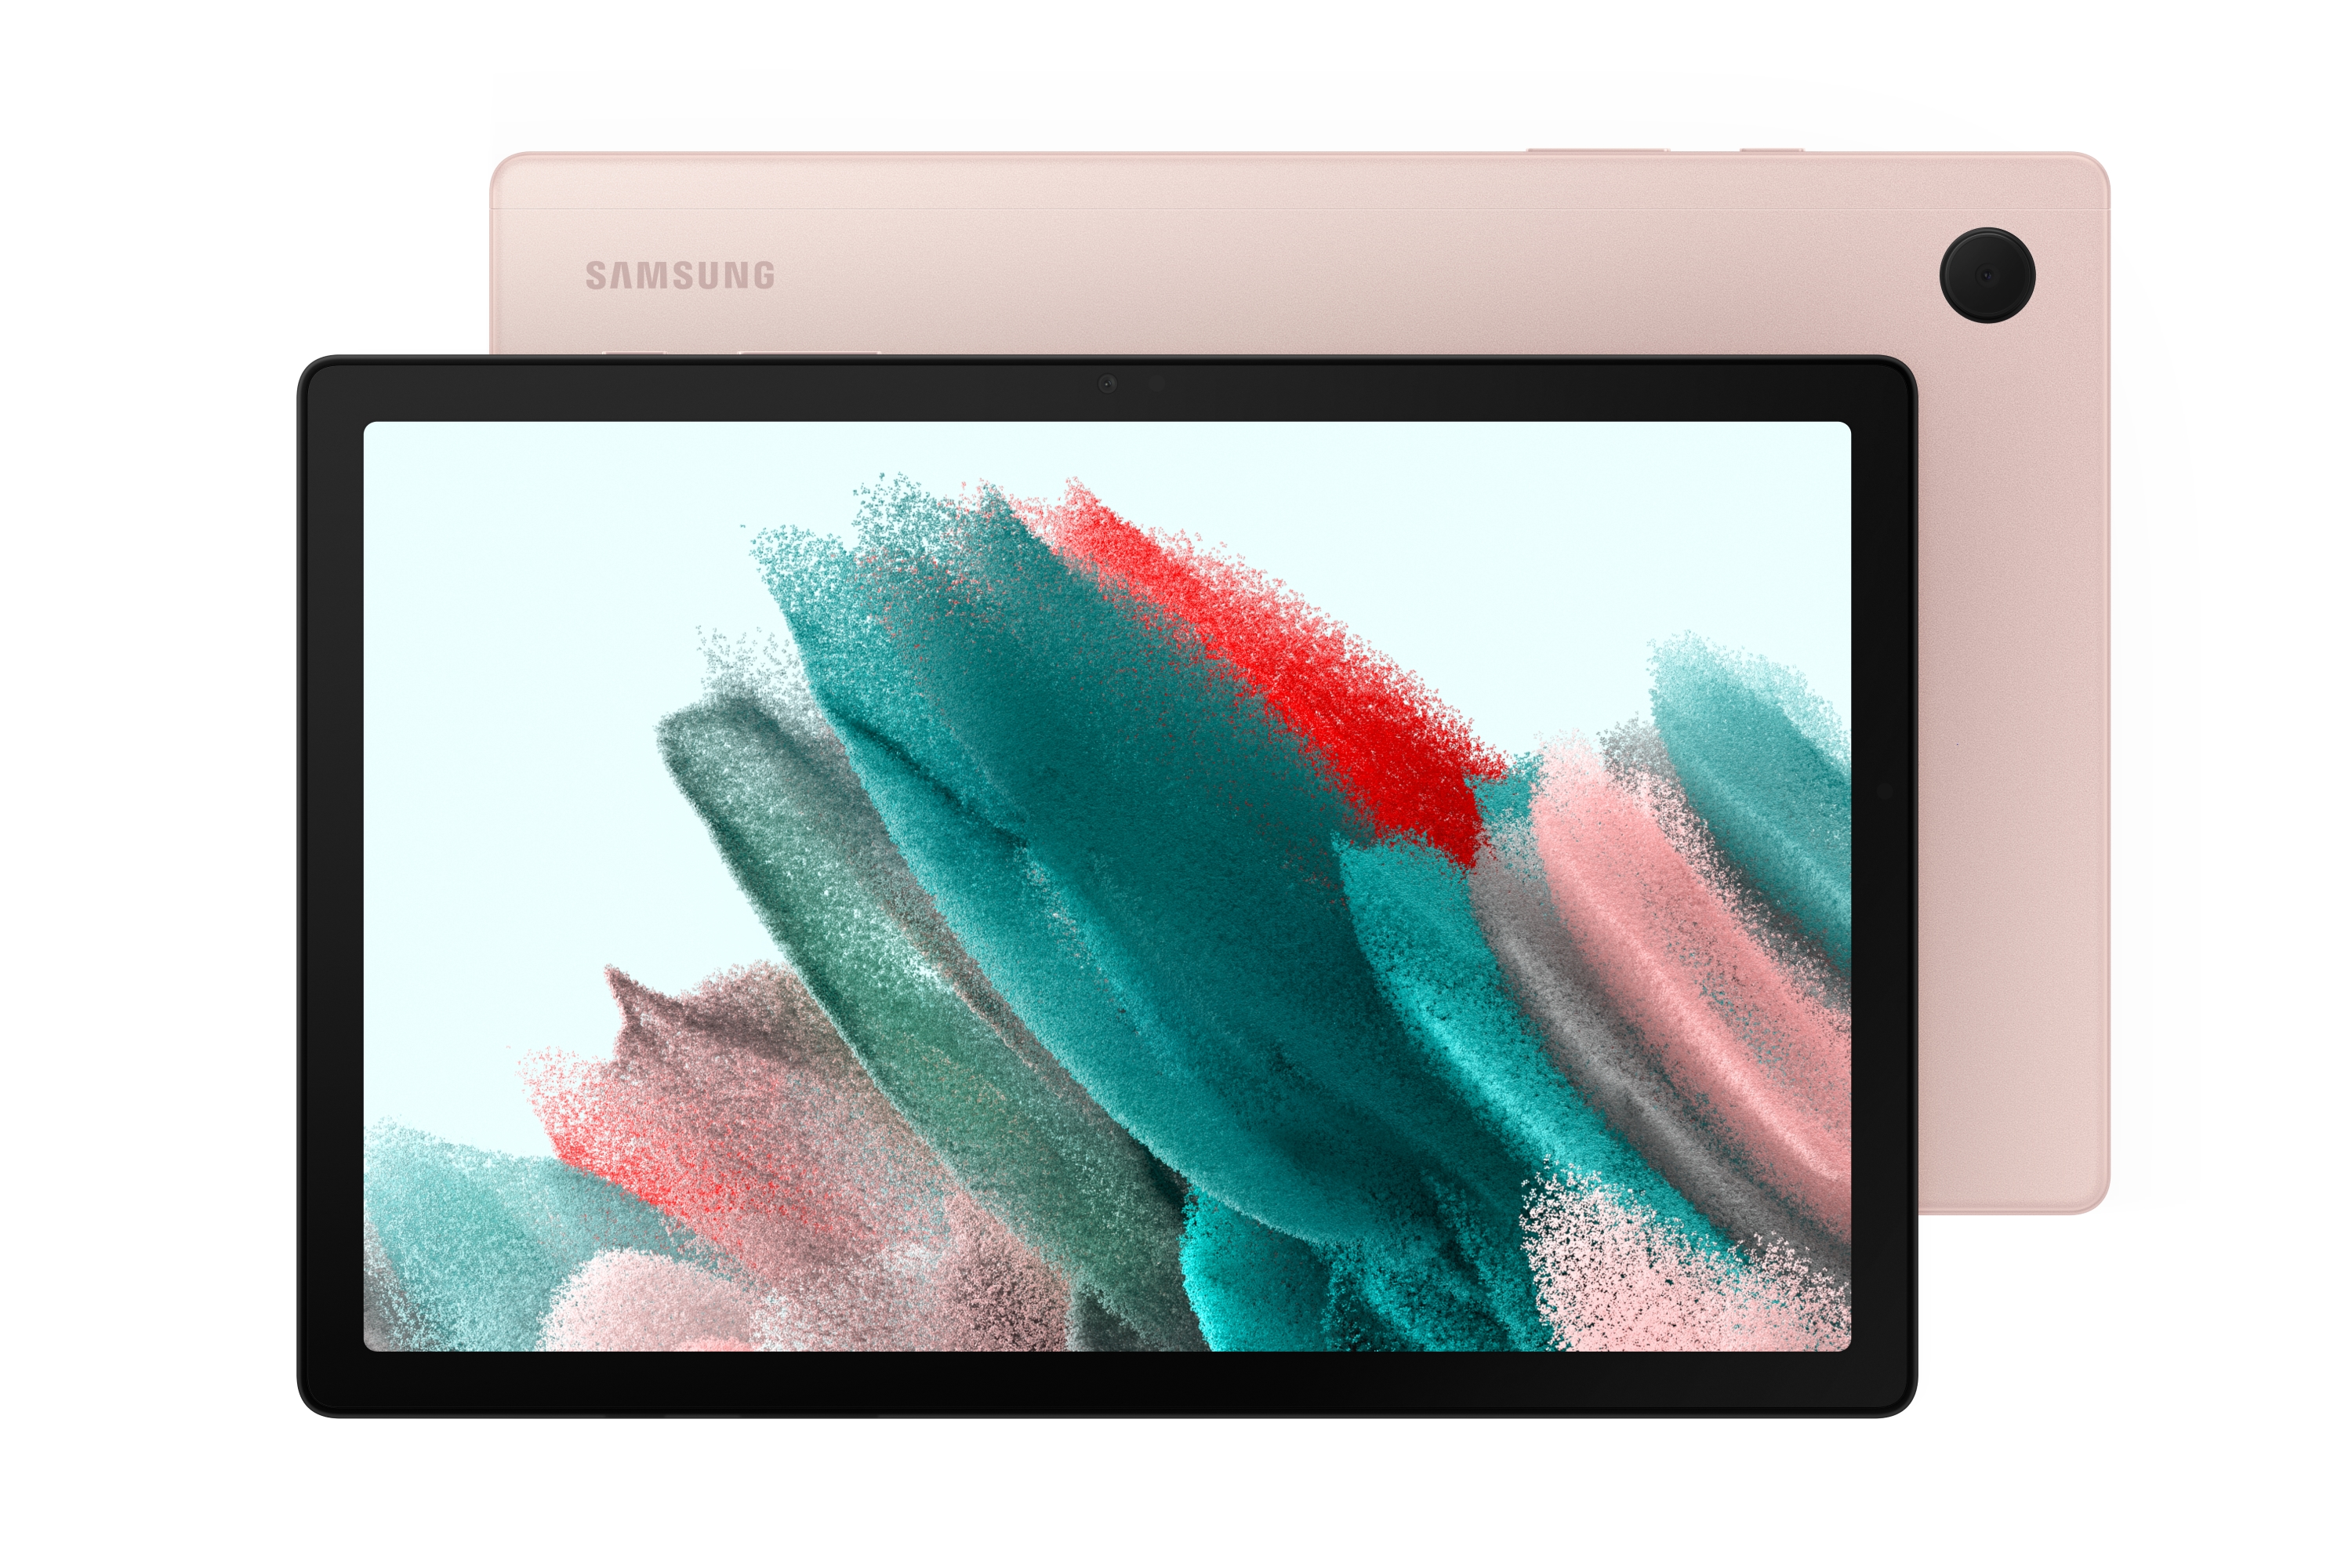 Galaxy Tab A8 màu hồng vàng là một sản phẩm hoàn hảo để đáp ứng nhu cầu giải trí và học tập của bạn. Với thiết kế tinh tế và màn hình sắc nét, Galaxy Tab A8 màu hồng vàng sẽ là một người bạn đồng hành đáng tin cậy cho bạn. Hãy truy cập vào hình ảnh liên quan để khám phá thêm về Galaxy Tab A8 và những tính năng tuyệt vời của nó! 